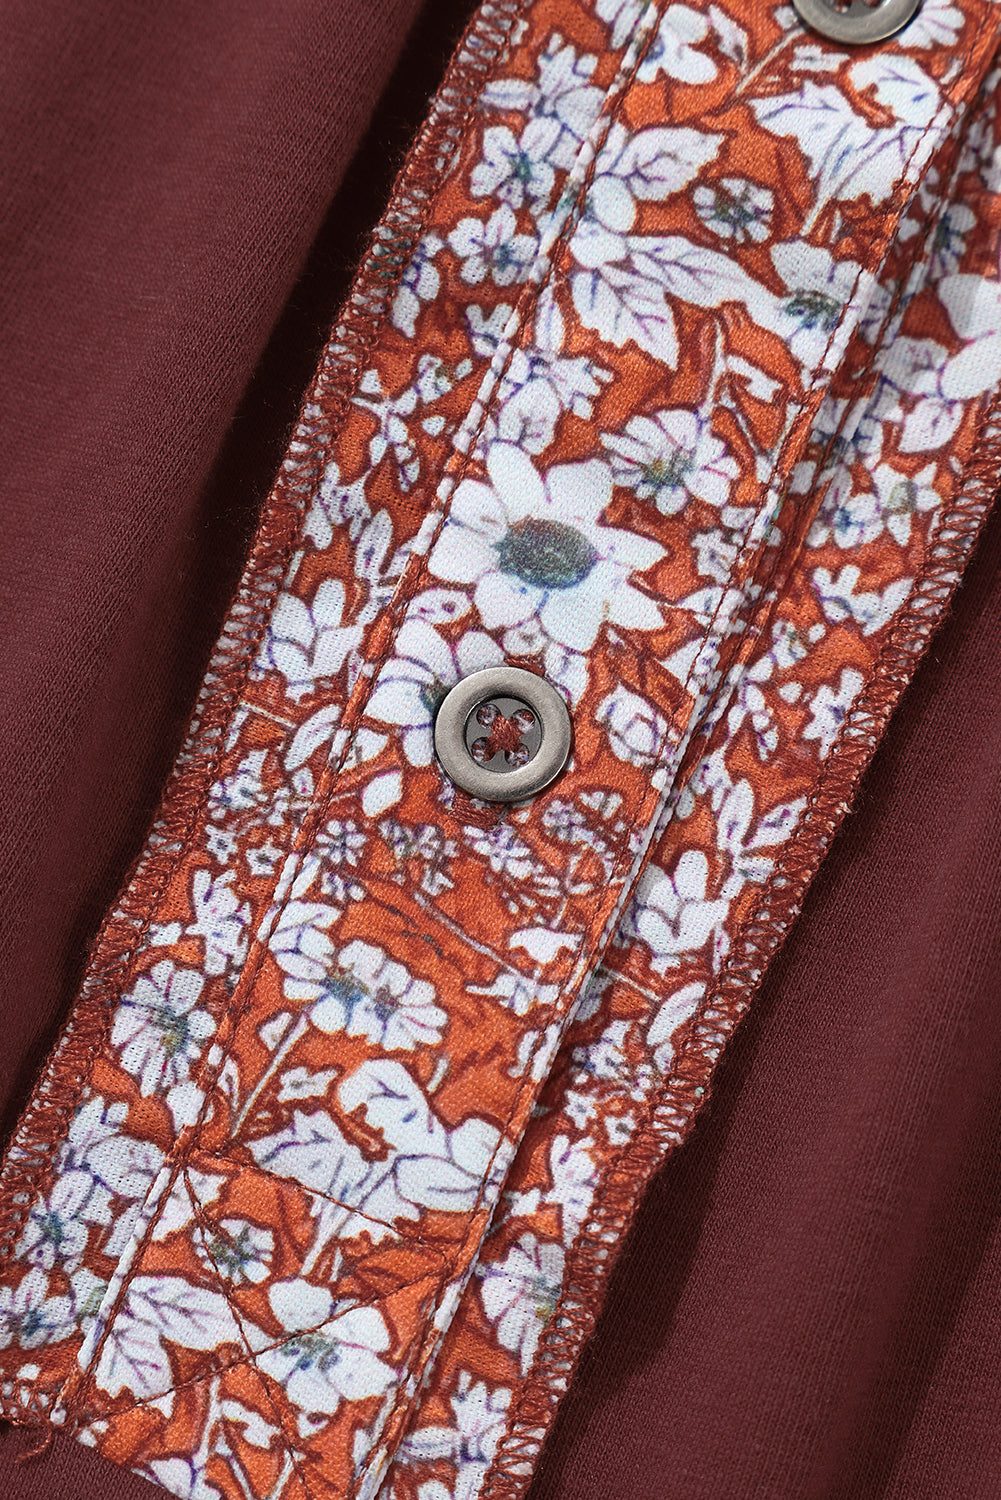 Rumena majica z mešanimi škofovskimi rokavi s karirastim vzorcem in cvetličnim vzorcem